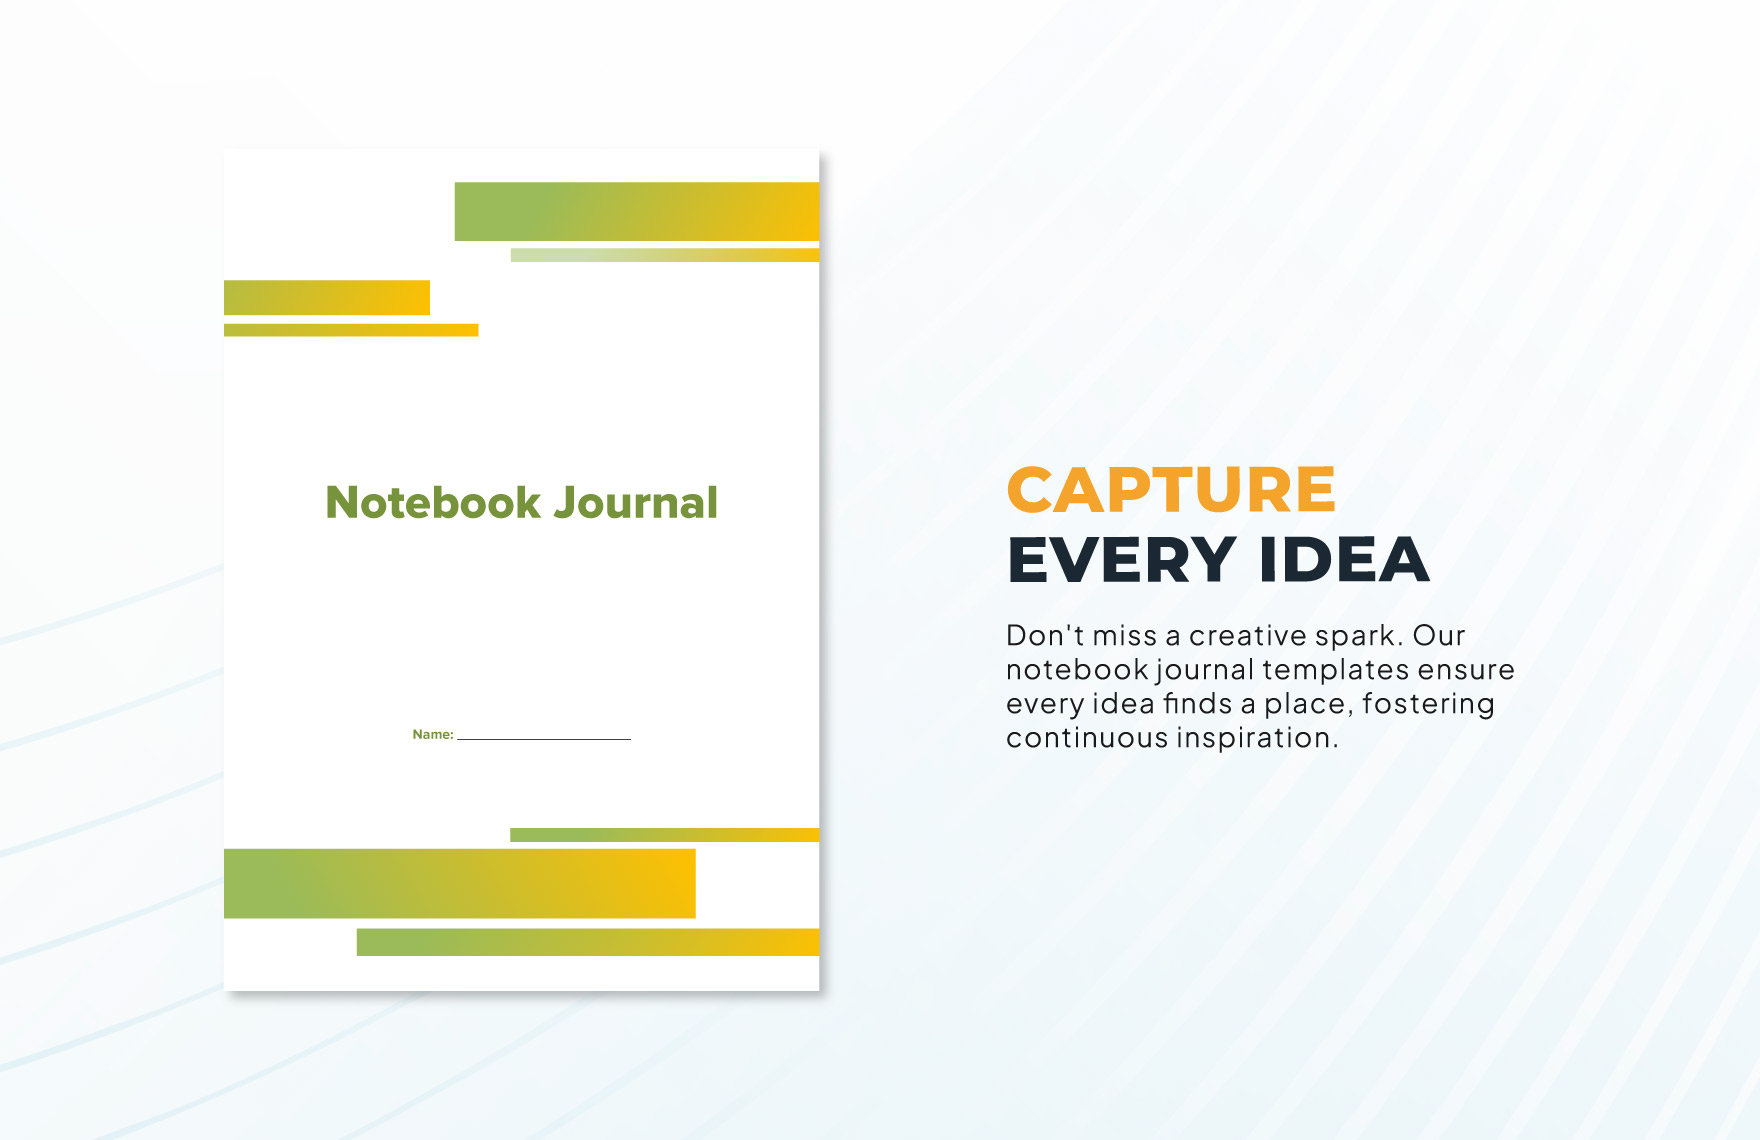 Basic Notebook Journals Template